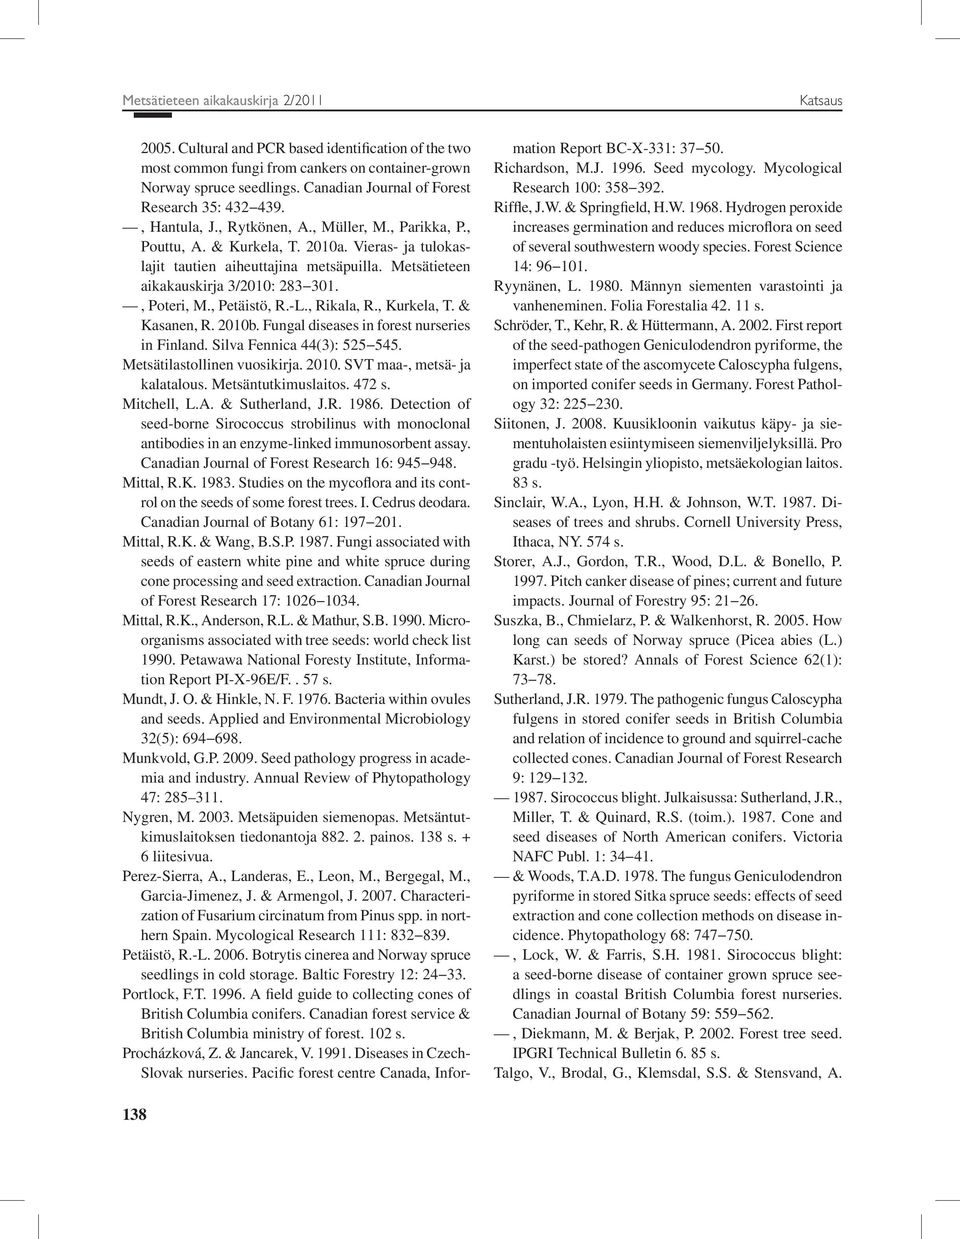 Metsätieteen aikakauskirja 3/2010: 283 301., Poteri, M., Petäistö, R.-L., Rikala, R., Kurkela, T. & Kasanen, R. 2010b. Fungal diseases in forest nurseries in Finland. Silva Fennica 44(3): 525 545.